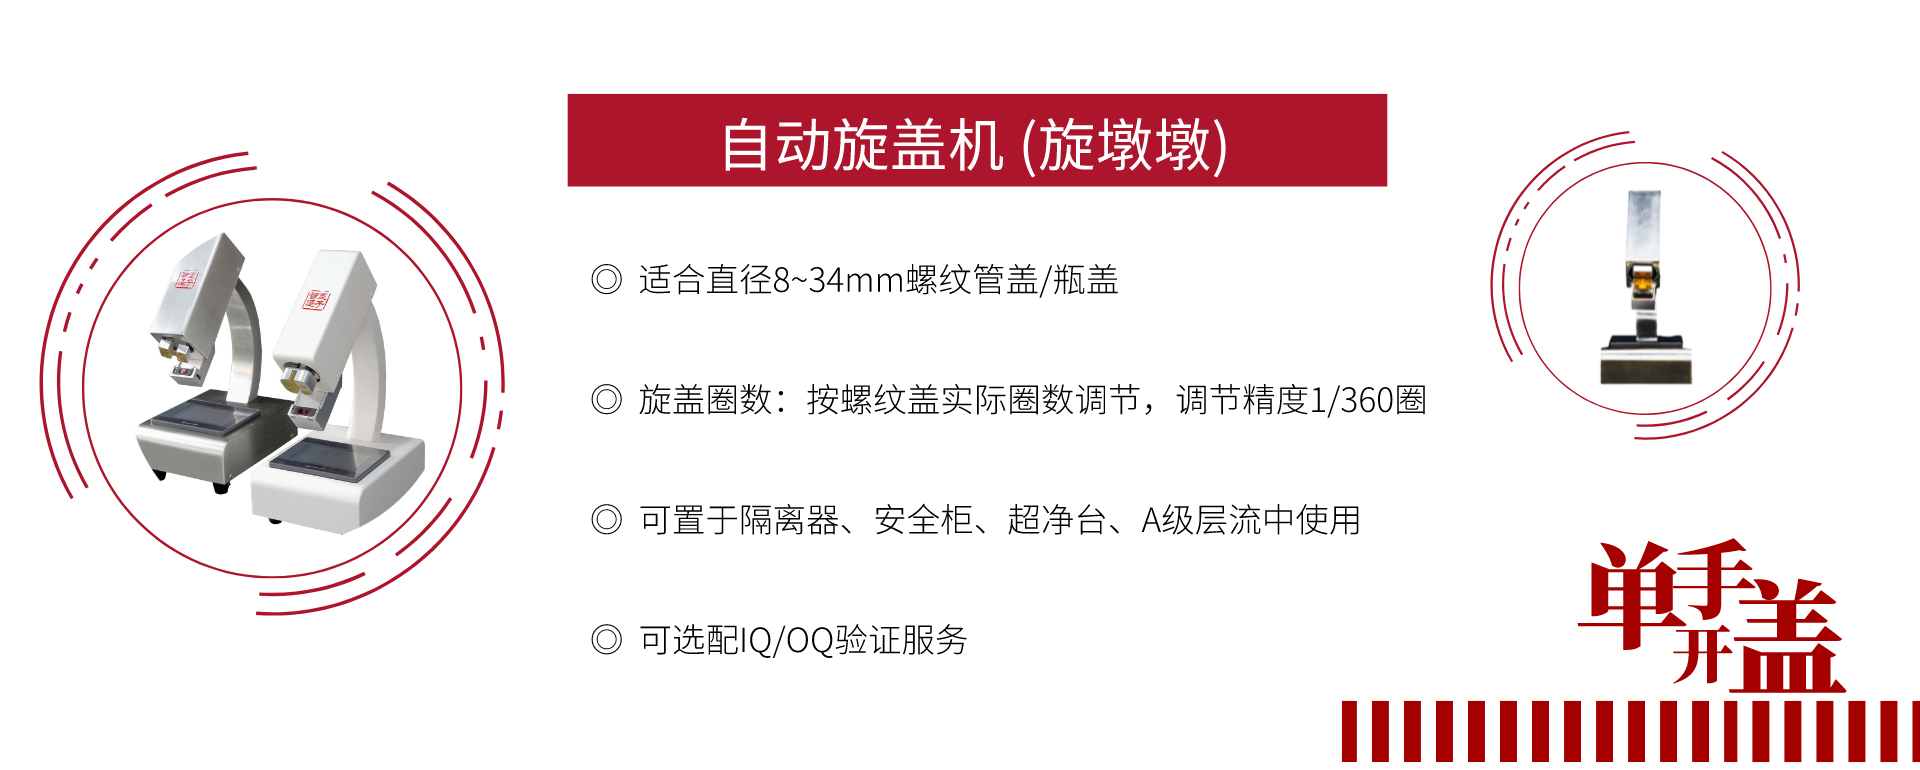 关于当前产品1997彩票网·(中国)官方网站的成功案例等相关图片